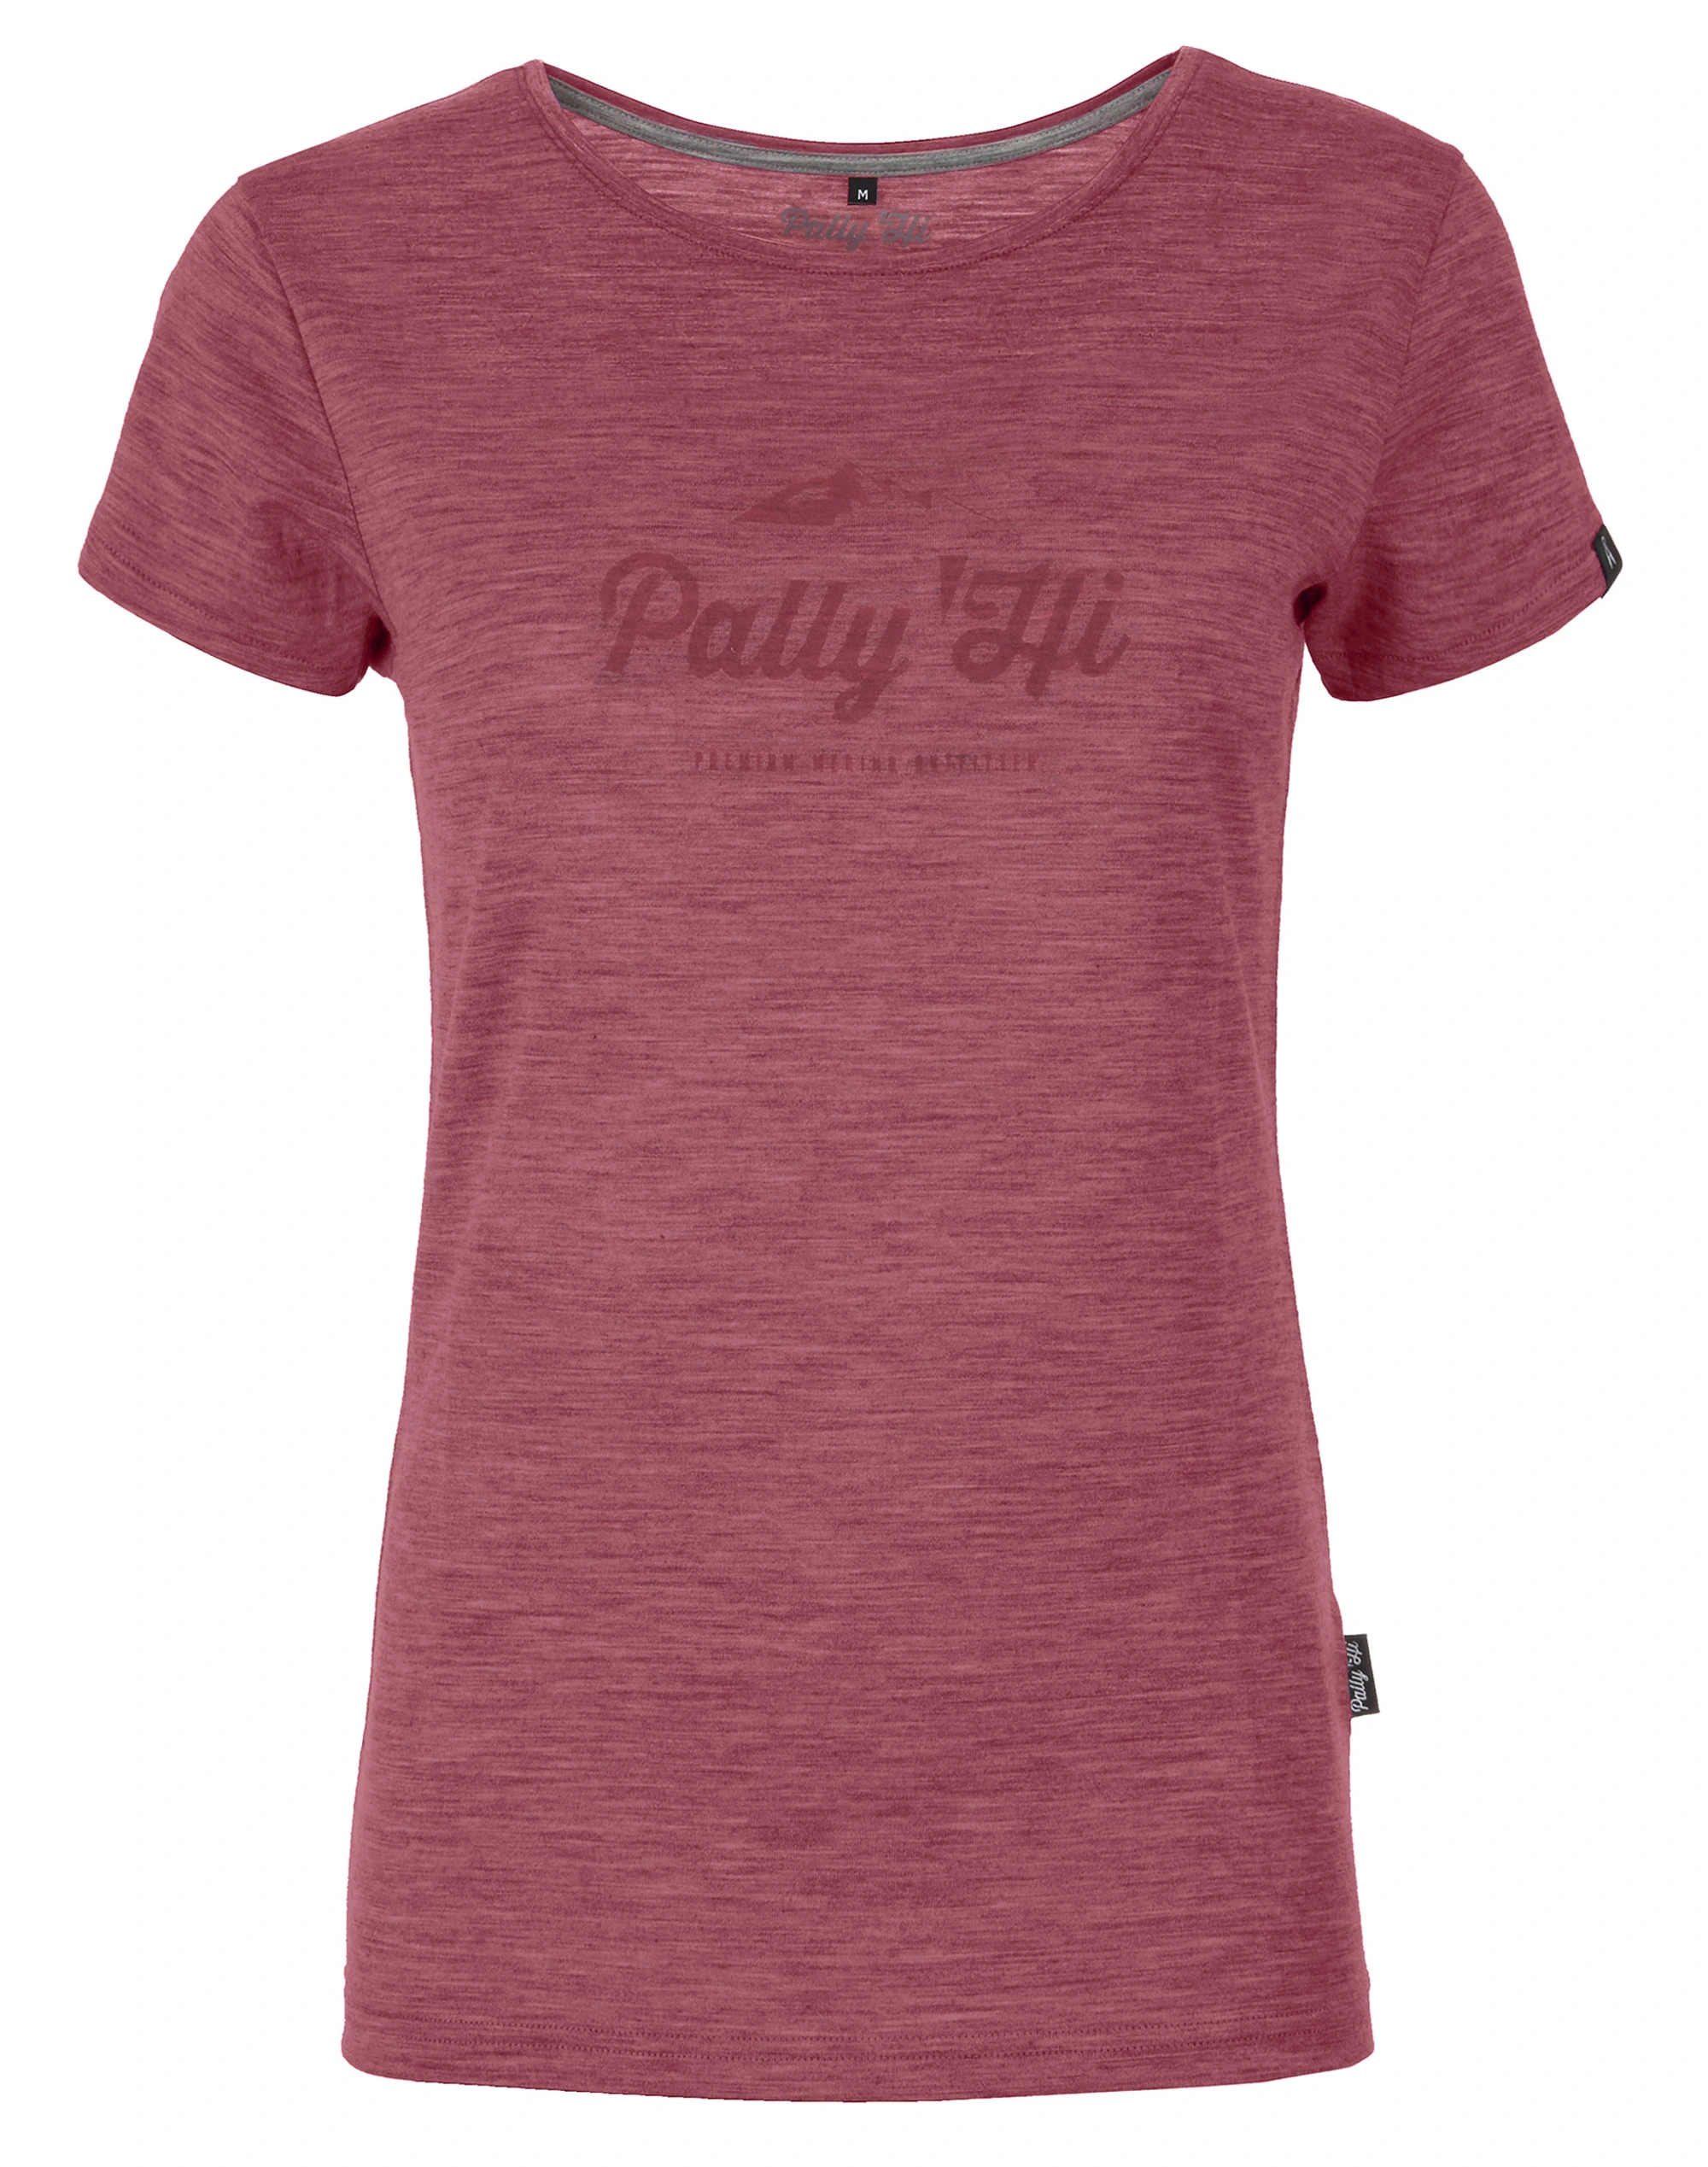 Im Test: Pally'Hi Classic Peak Logo T-Shirt